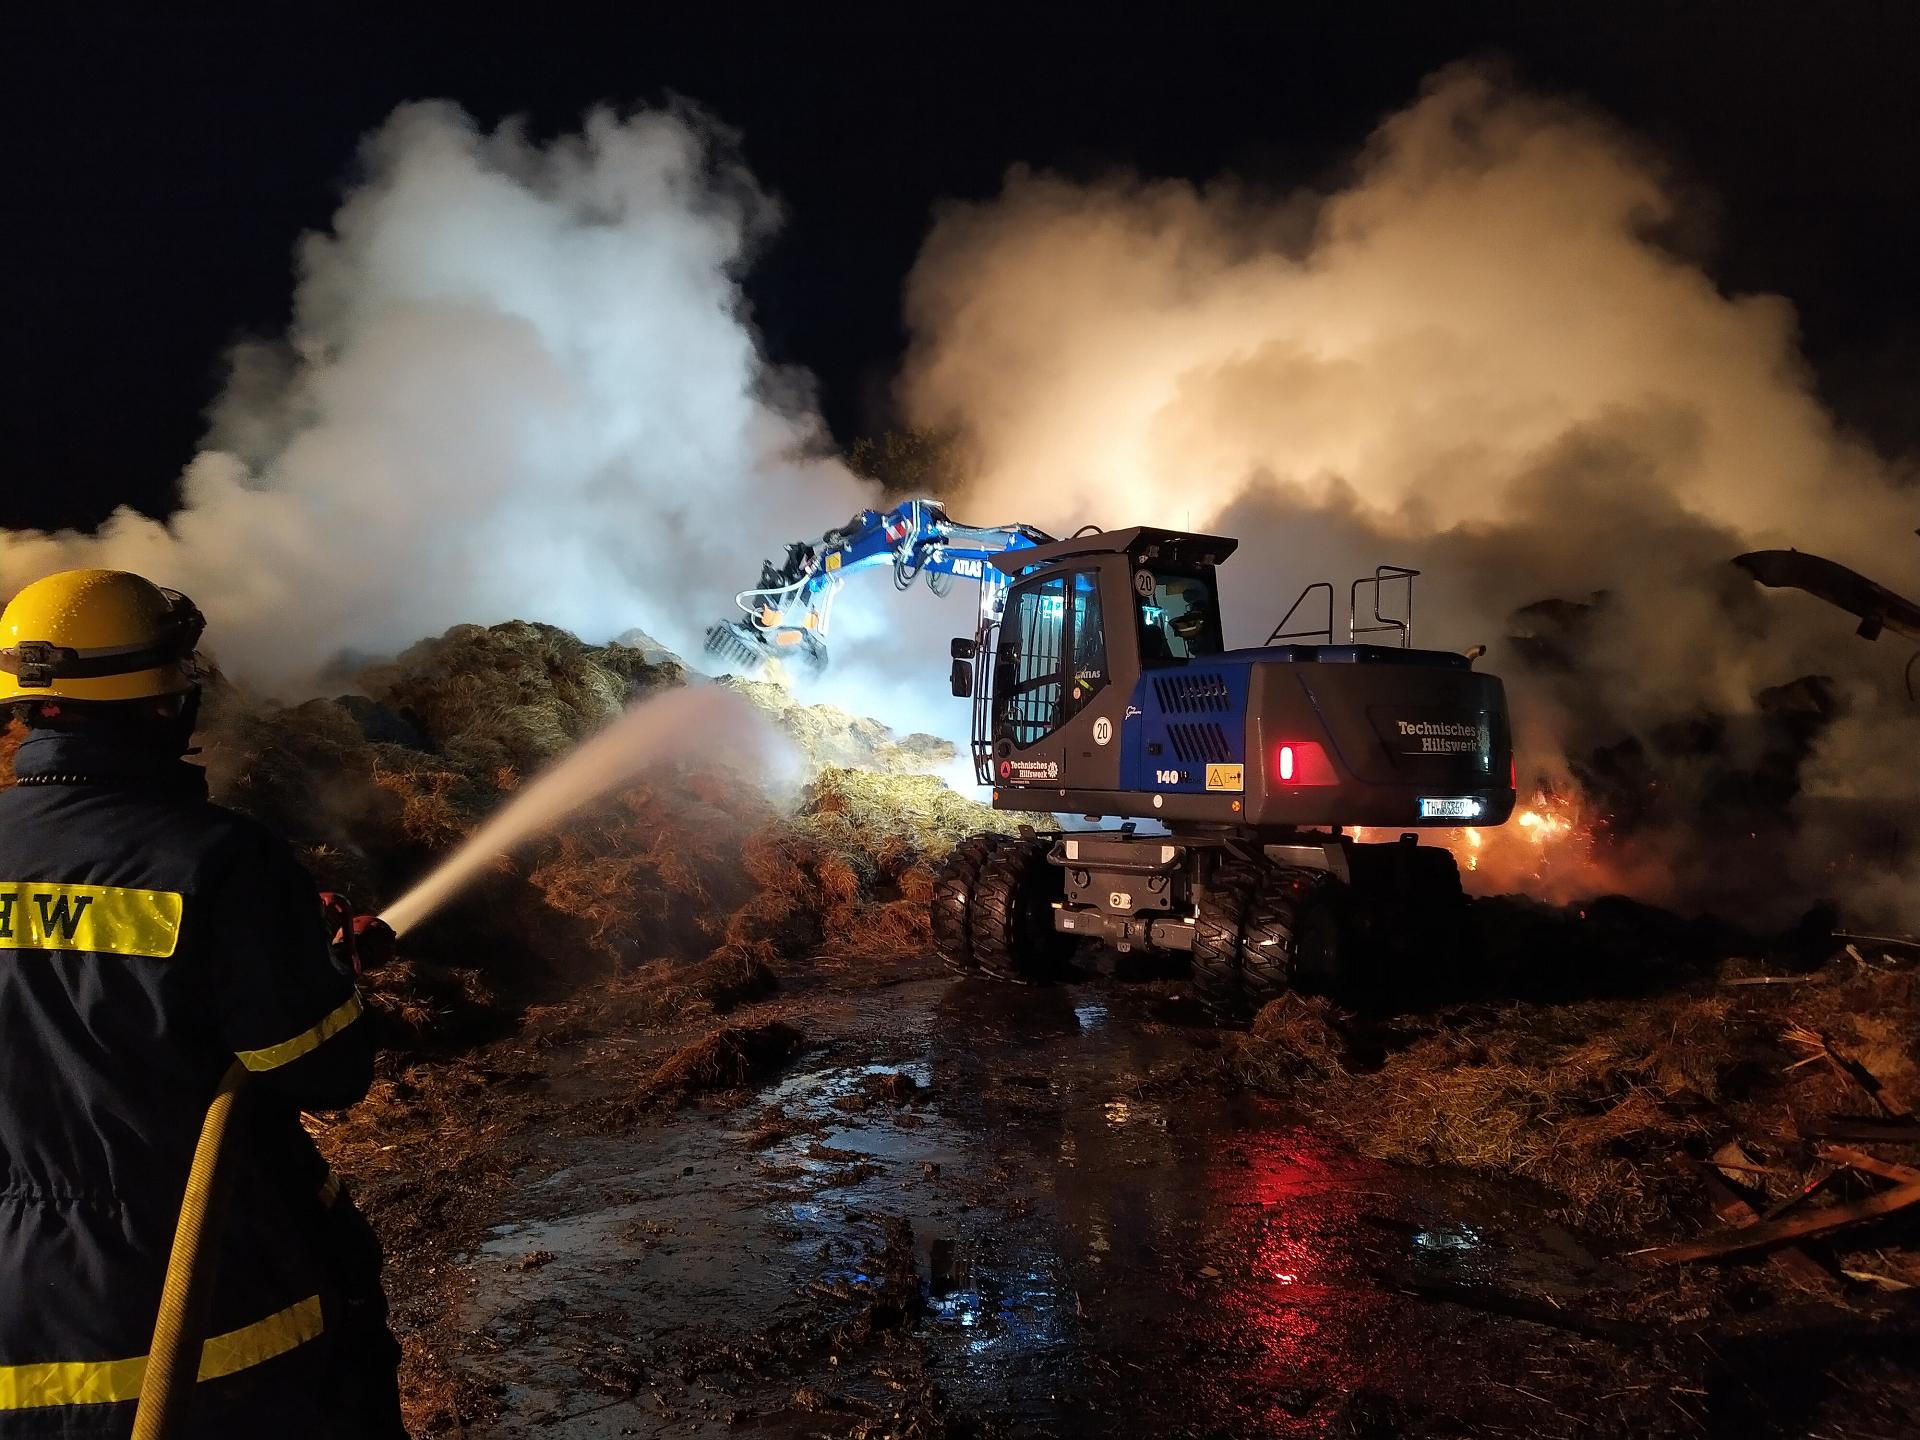 Fachgruppe Räumen unterstützt bei Brand auf Pferdehof in Ofterdingen